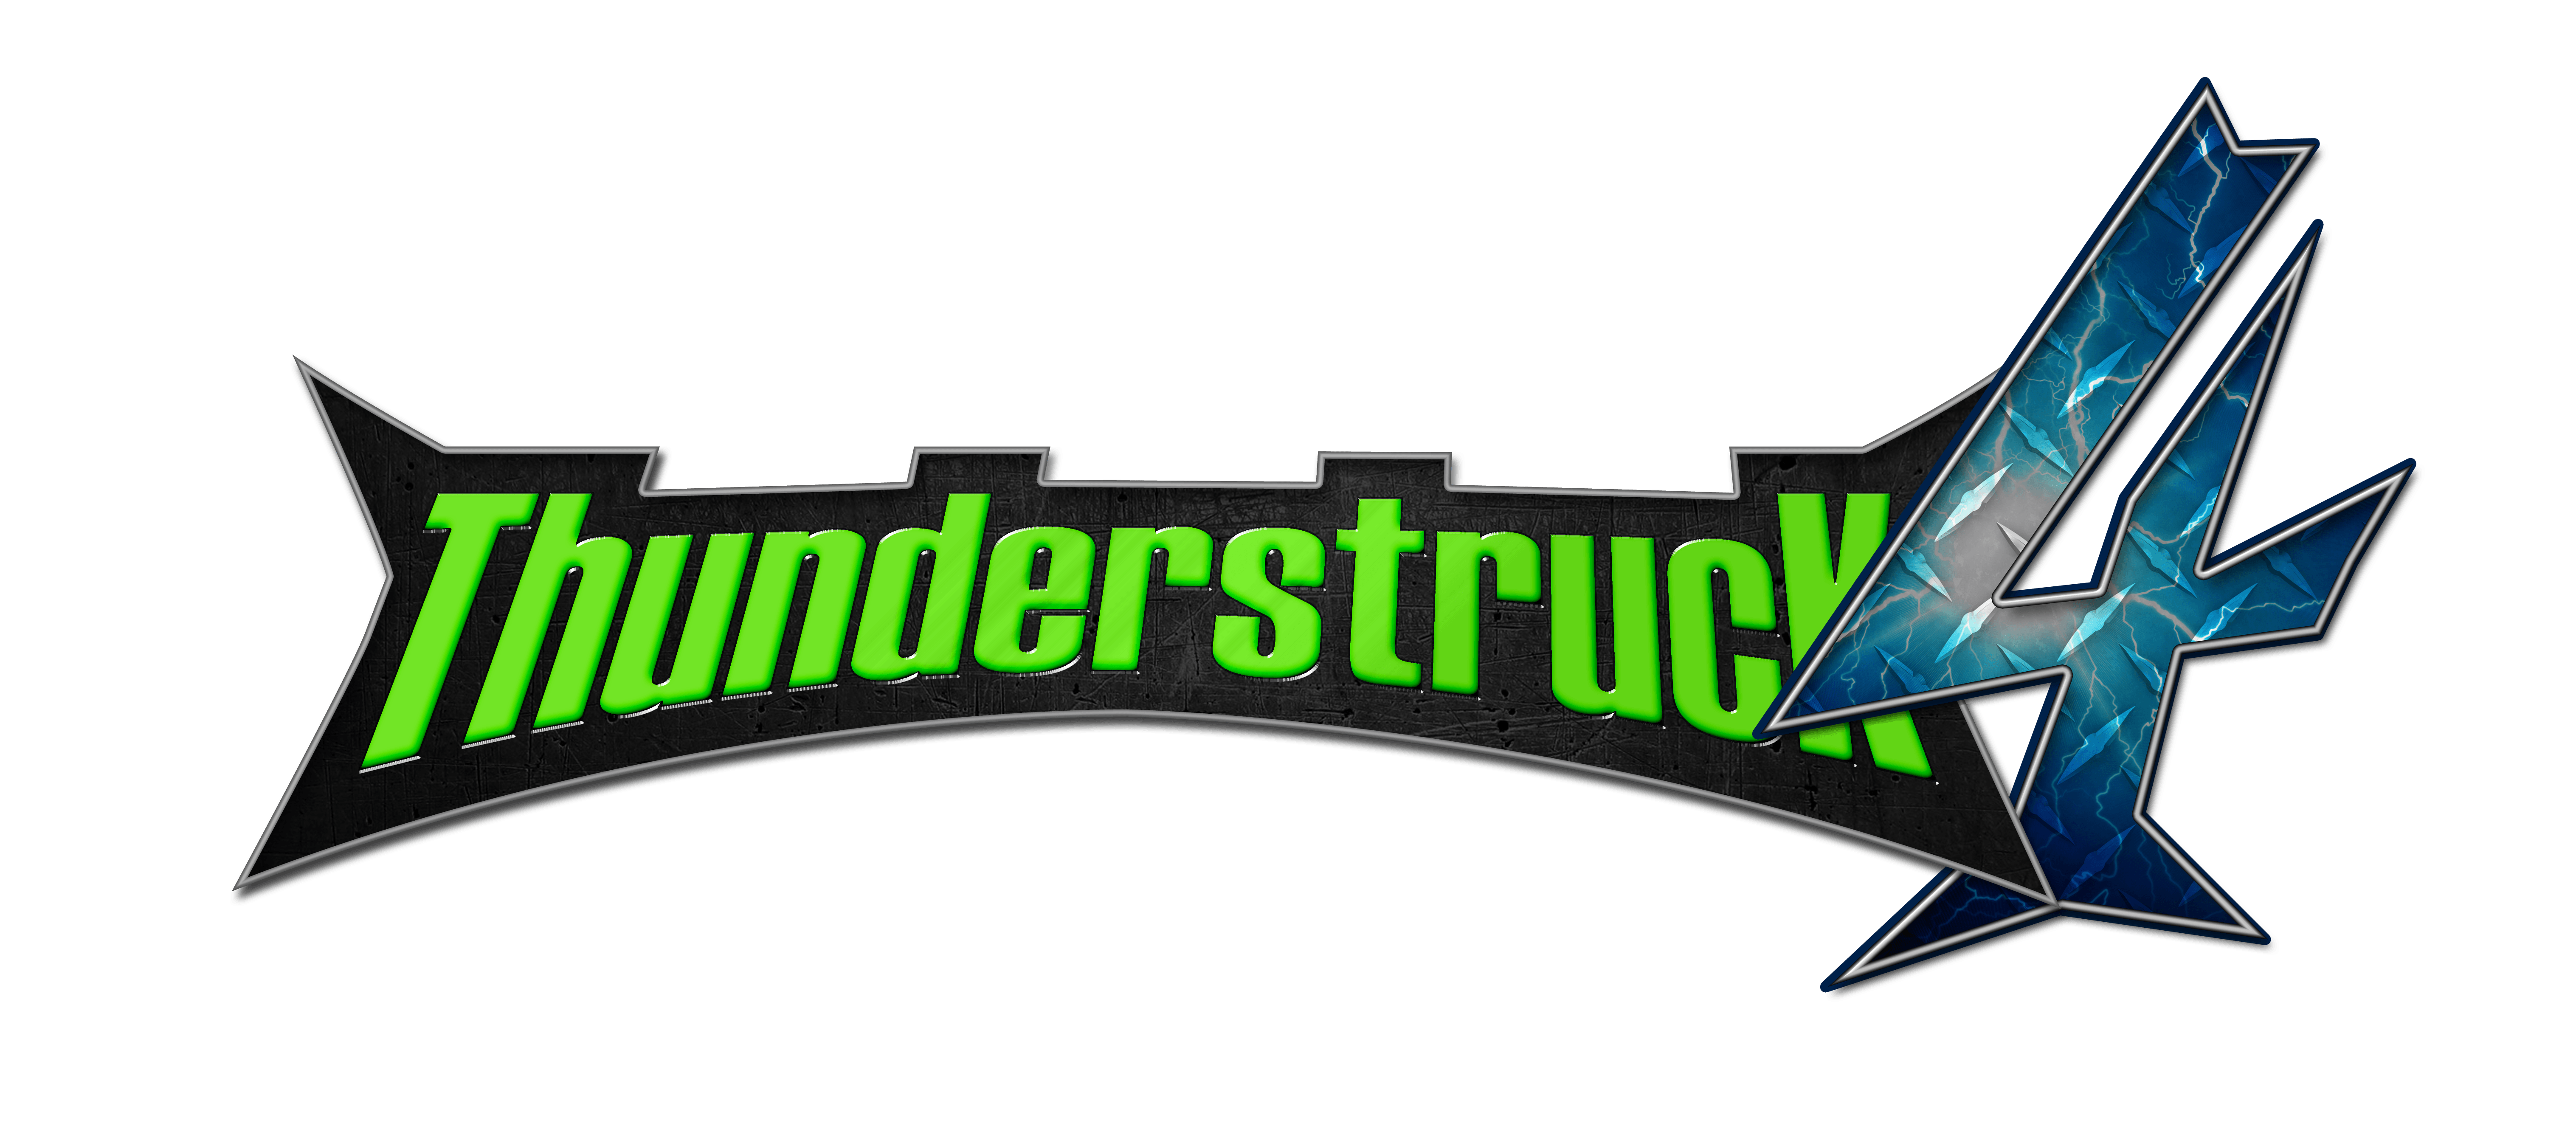 Thunderstruck Logo - Thunderstruck 4. Capcom Pro Tour